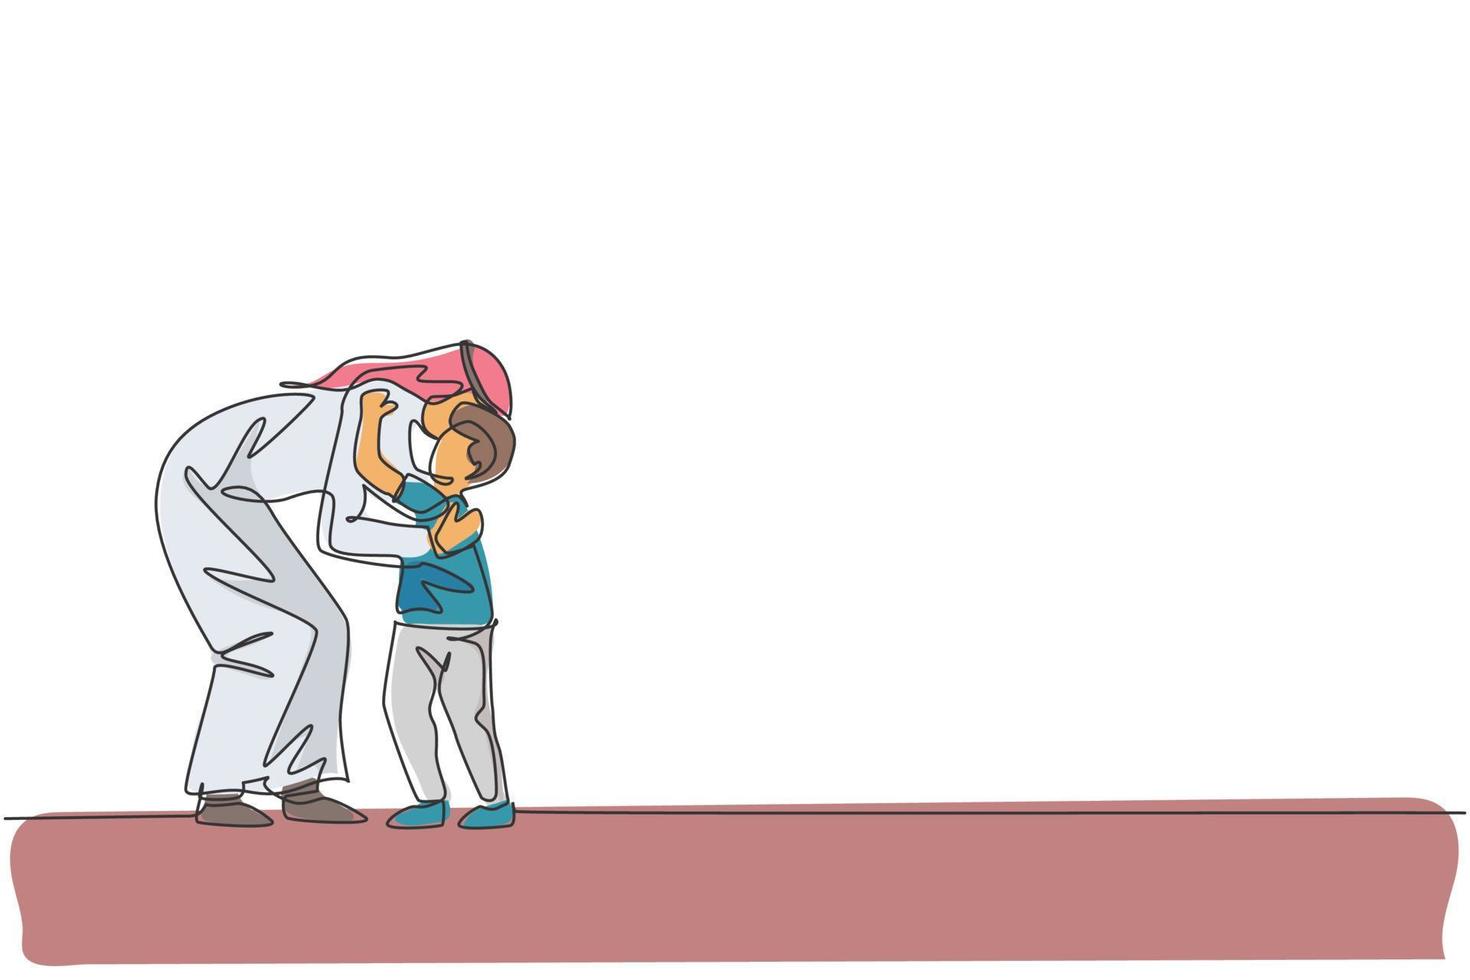 singolo disegno a linea continua del giovane padre arabo abbraccia suo figlio prima di andare a scuola, genitori felici. cura della famiglia musulmana islamica, concetto di cappa. illustrazione vettoriale di design alla moda con una linea di disegno